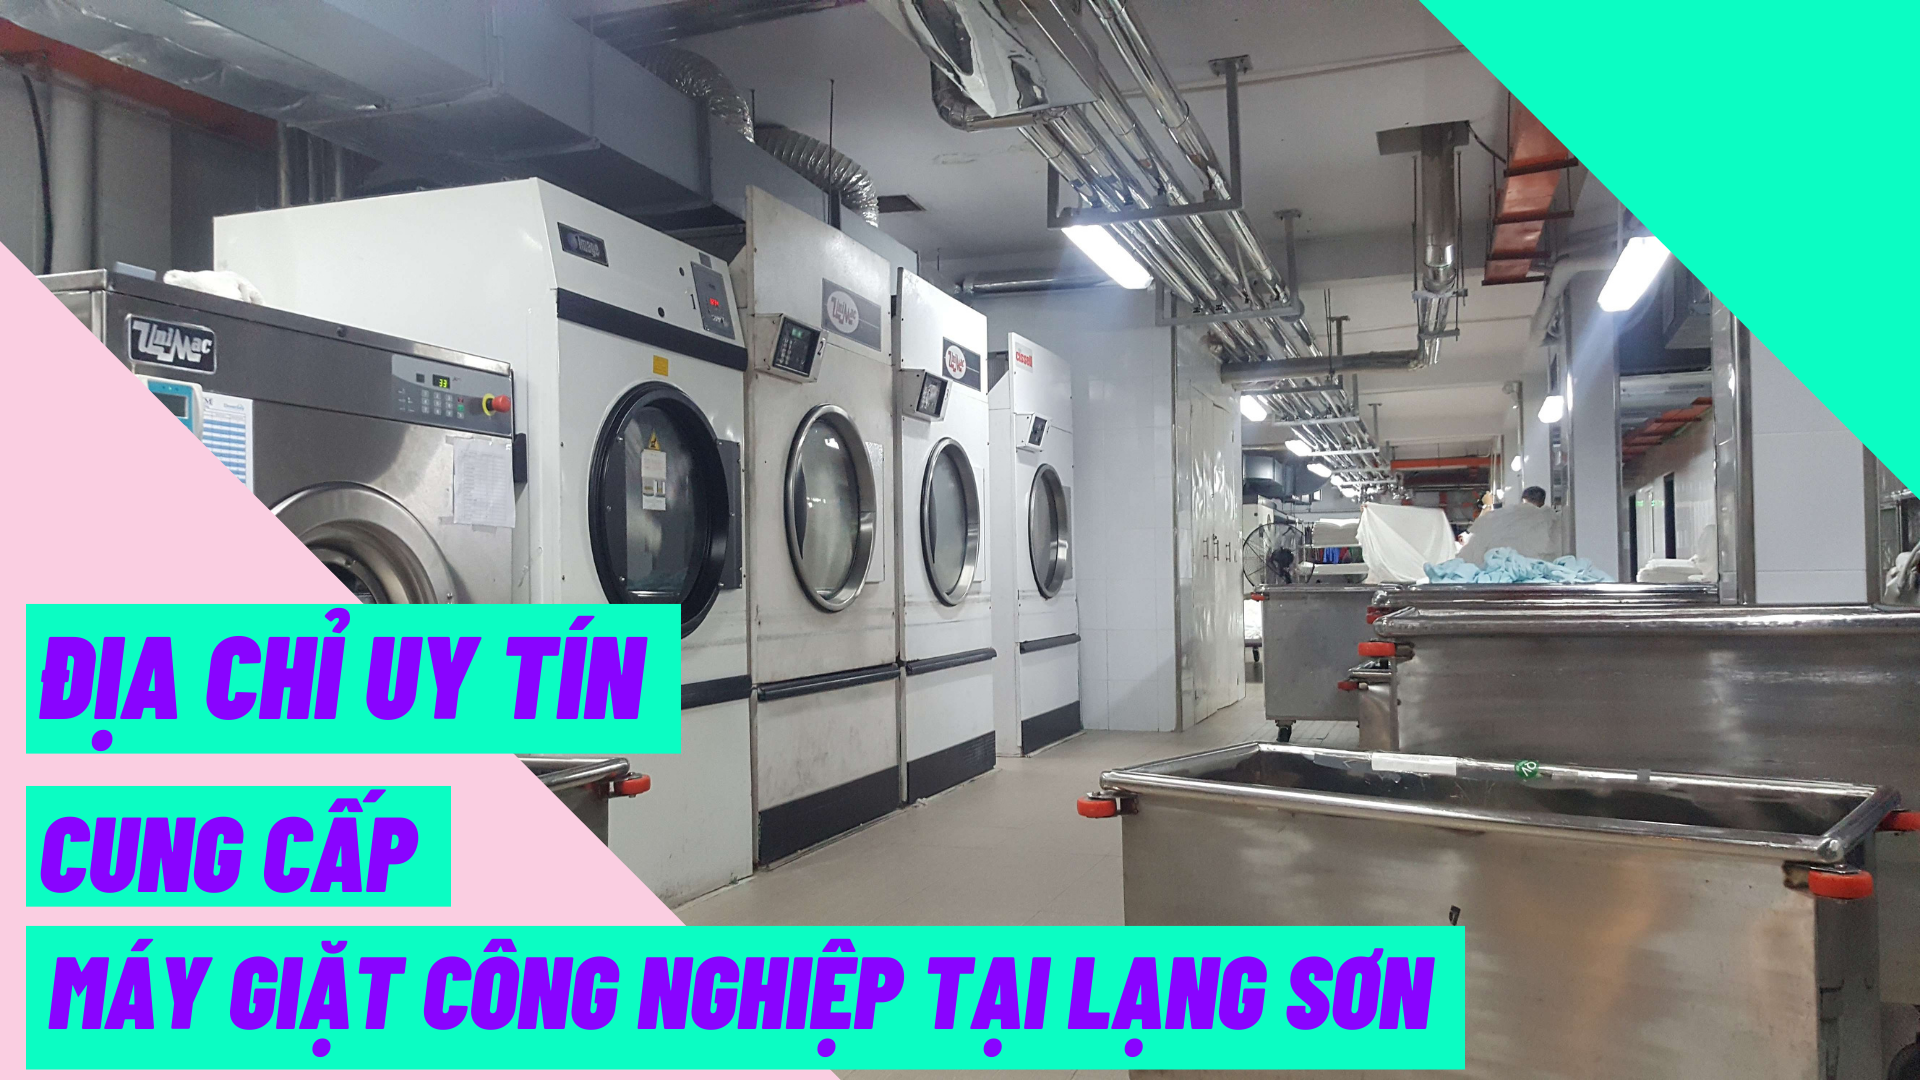 Địa chỉ uy tín cung cấp máy giặt công nghiệp tại Lạng Sơn